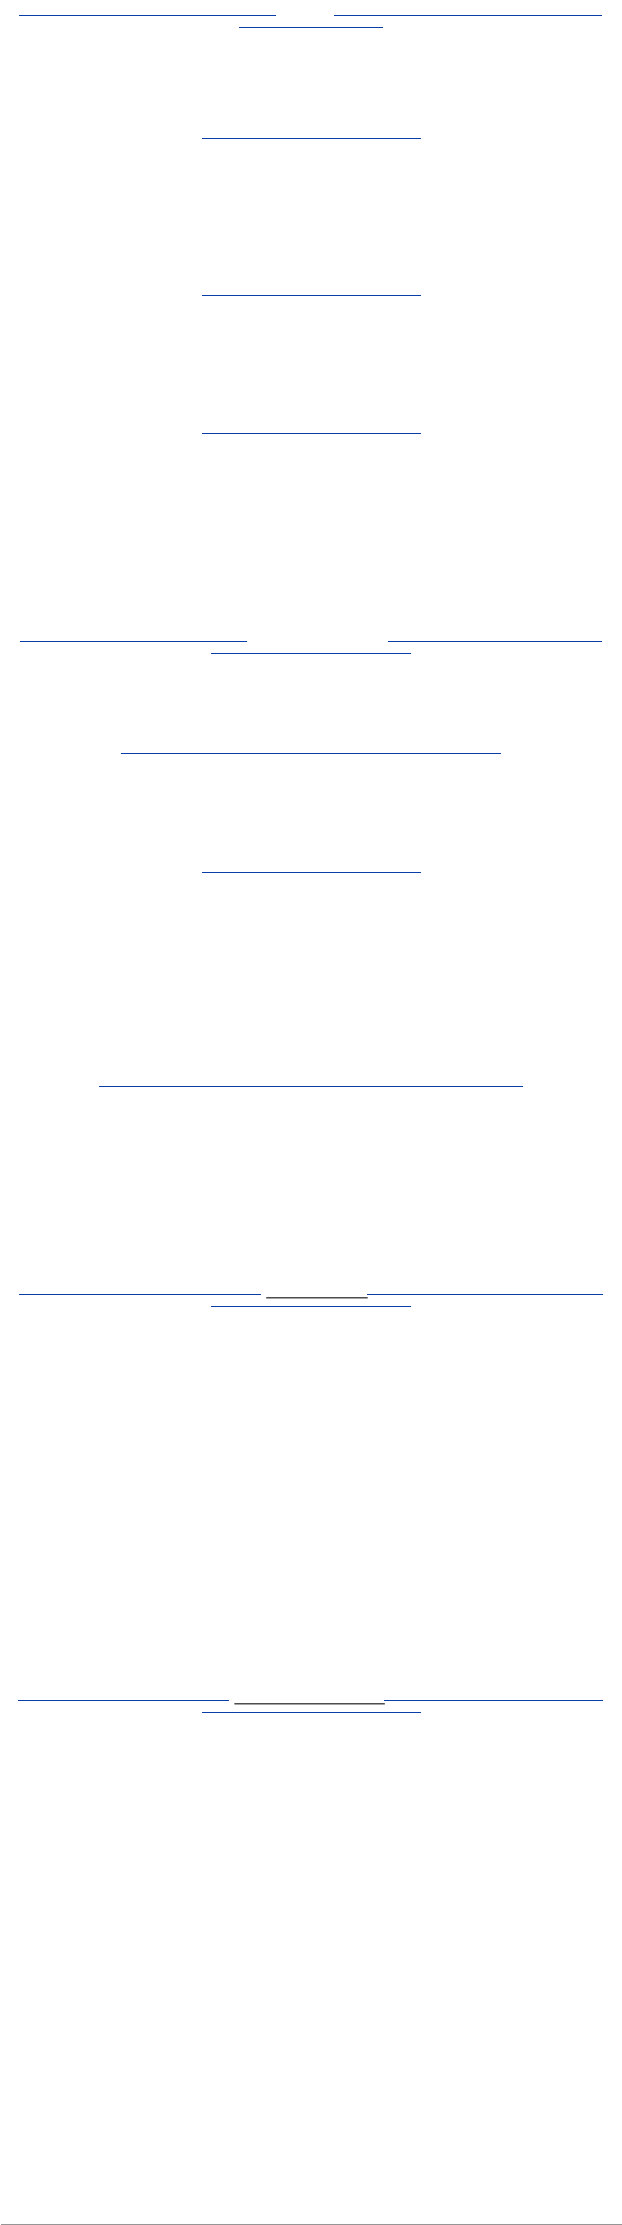 
￼  Duo ￼
￼



Clavecin & traverso
￼


• J. S. Bach : intégrale des quatre sonates pour traverso et basse continue ou clavecin obligé
• J. S. Bach, C. Ph. E. Bach, J. Ch. Bach : sonates pour clavecin obligé et traverso



Clavecin & viole de gambe
￼


• J. S. Bach : intégrale des trois sonates pour clavecin et viole de gambe



Clavecin & violon
￼




• J. S. Bach : intégrale des six sonates pour clavecin et violon (en deux concerts)
• J. S. Bach : sonates pour clavecin et violon, pièces pour clavecin ou violon seul




￼ Trio/Quatuor ￼
￼




Traverso, viole de gambe/violoncelle, clavecin
￼


• L'Italie en Europe : P. Locatelli, A. Vivaldi, J. M. Leclair, G. F. Händel


Traverso, violon, clavecin
￼





• Le bon gout concertant : sonates & pièces françaises pour clavecin avec accompagnement de violon ou de flûte (J. B. de Boismortier, J. Duphly etc.)



Traverso, violon, viole de gambe/violoncelle, clavecin
￼


• J. S. Bach : Offrande Musicale
• J. Ph. Rameau : Pièces de clavecin en Concerts
• Bach & consort : sonates & trios de J. S. Bach, de ses fils & de G. Ph. Telemann





￼ Orchestre ￼
￼


	•	J. S. Bach : concerto pour clavecin, Ve Concerto Brandebourgeois ; F. X. Richter : concerto pour traverso

	•	J. S. Bach : concerto pour clavecin, concerto pour clavecin, violon & traverso (la mineur, BWV 1044) ; C. Ph. E. Bach : concerto pour traverso

	•	G. Ph. Telemann : Suite en la mineur pour flûte à bec, concerto en mi mineur pour flûte à bec & traverso ; J. S. Bach : Ve Concerto Brandebourgeois

	•	J. S. Bach : concerto pour clavecin, IIIe Ouverture avec traverso obligé (si mineur, BWV 1067) 

 •	A. Vivaldi : concerto pour basson




￼ Avec chanteurs ￼
￼










	•	F. Couperin : trois Leçons de Ténèbres, pièces extraites des deux Suites pour viole de gambe & basse continue.
Deux chanteuses, viole de gambe, clavecin & orgue.

	•	M. R. De Lalande : trois Leçons de Ténèbres, Miserere, pièces instrumentales (J. S. Bach, extraits des Sonates pour clavecin & viole de gambe ou Tombeaux & Pavanes français).
Une chanteuse, une comédienne, viole de gambe, clavecin & orgue.

	•	Cantates françaises : Campra (Didon), Clérambault (Médée, Léandre et Hero), pièces instrumentales.
Une chanteuse, violon, traverso, viole de gambe, clavecin.






￼

